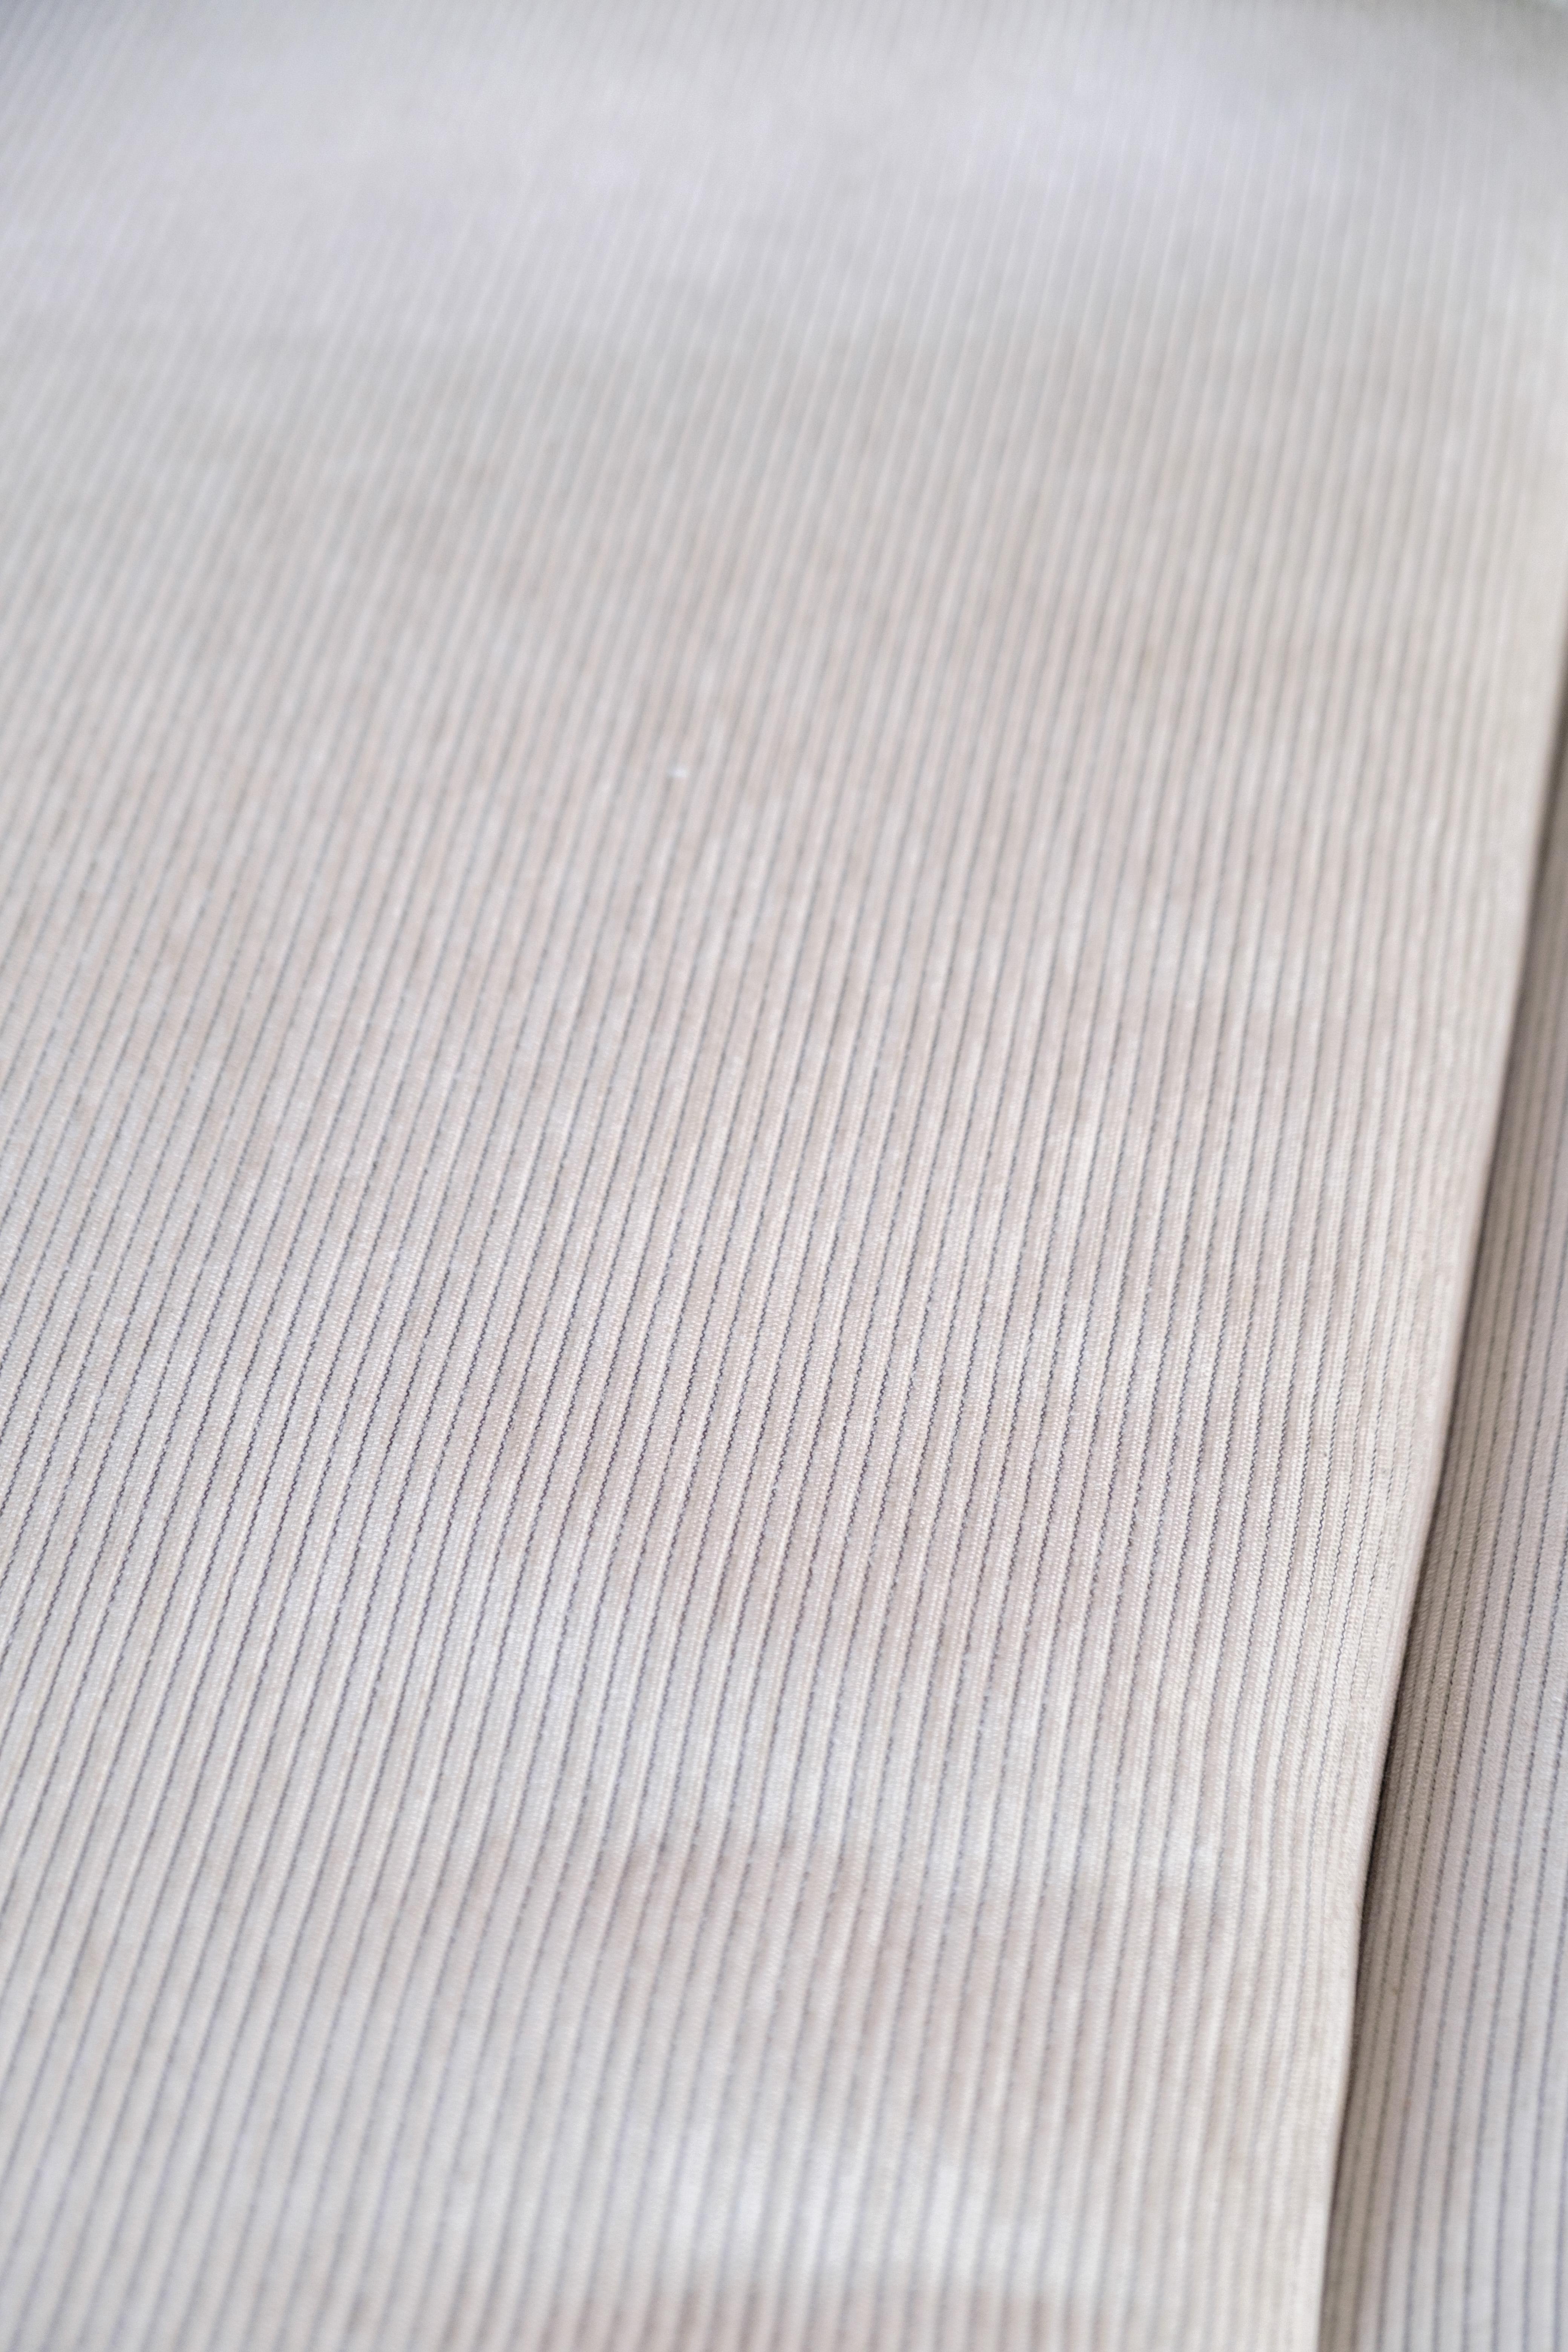 Baseline Chaiselong-Sofa, entworfen von Jens Juul Eilersen, in cremeweißer Farbe. Baseline strahlt Qualität und Komfort aus, und das schlichte Design macht das Sofa zeitlos und passt in jedes Interieur. Das Sofa ist mit dem originalen Label versehen